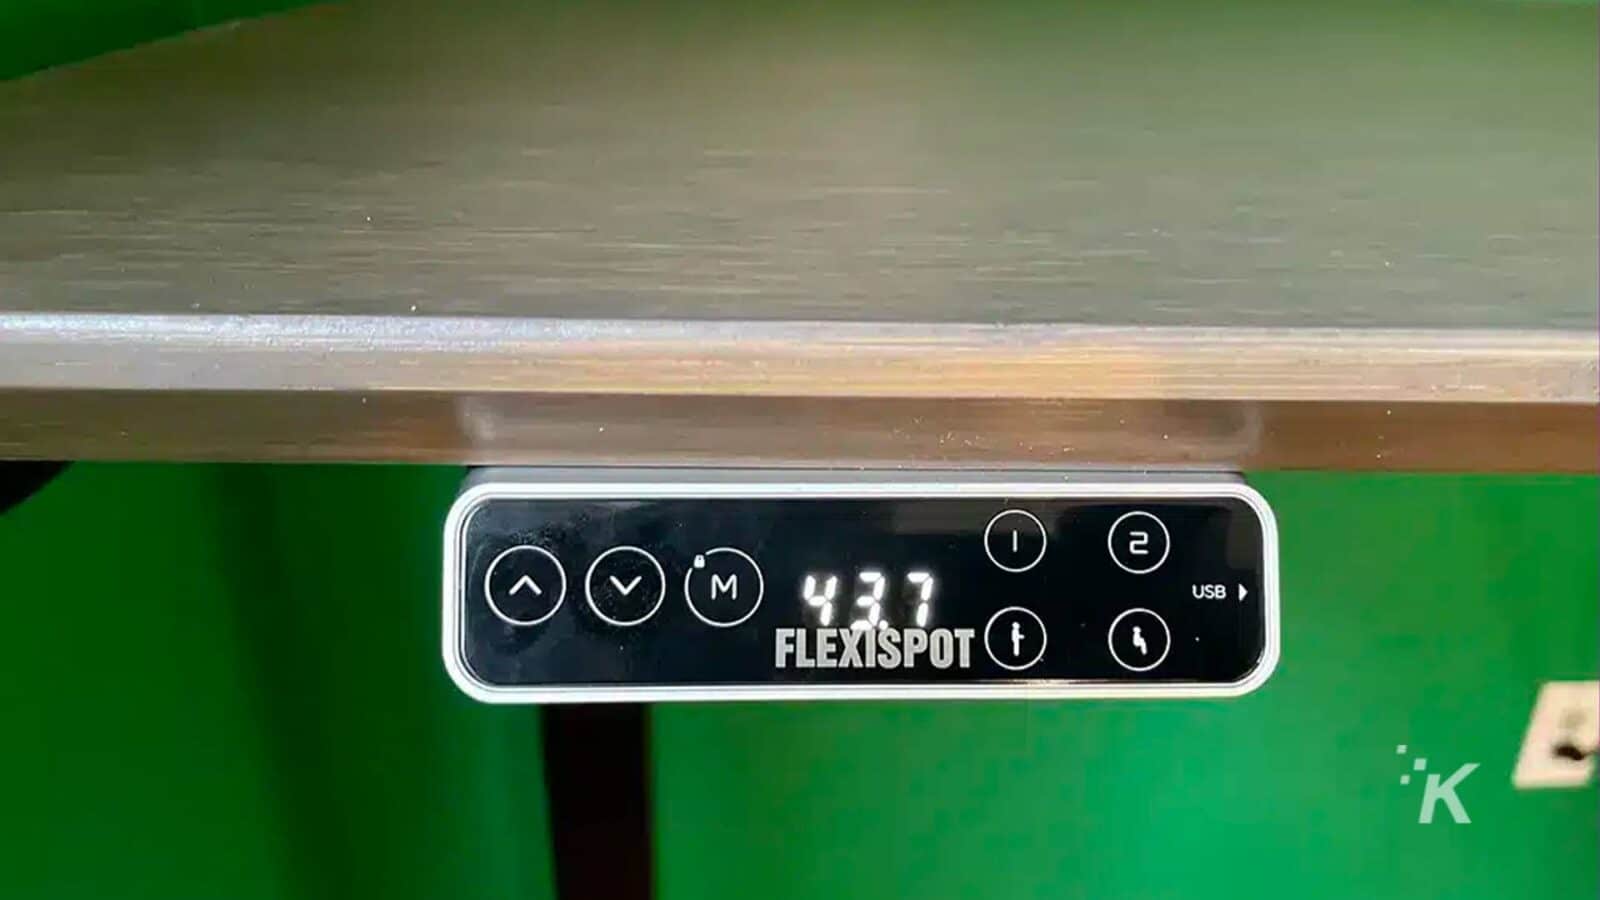 Resimde, bir FlexiSpot cihazına bağlanan bir USB kablosu gösterilmektedir. Tam Metin: - VM) 437 2 1 USB ve FLEXISPOT K